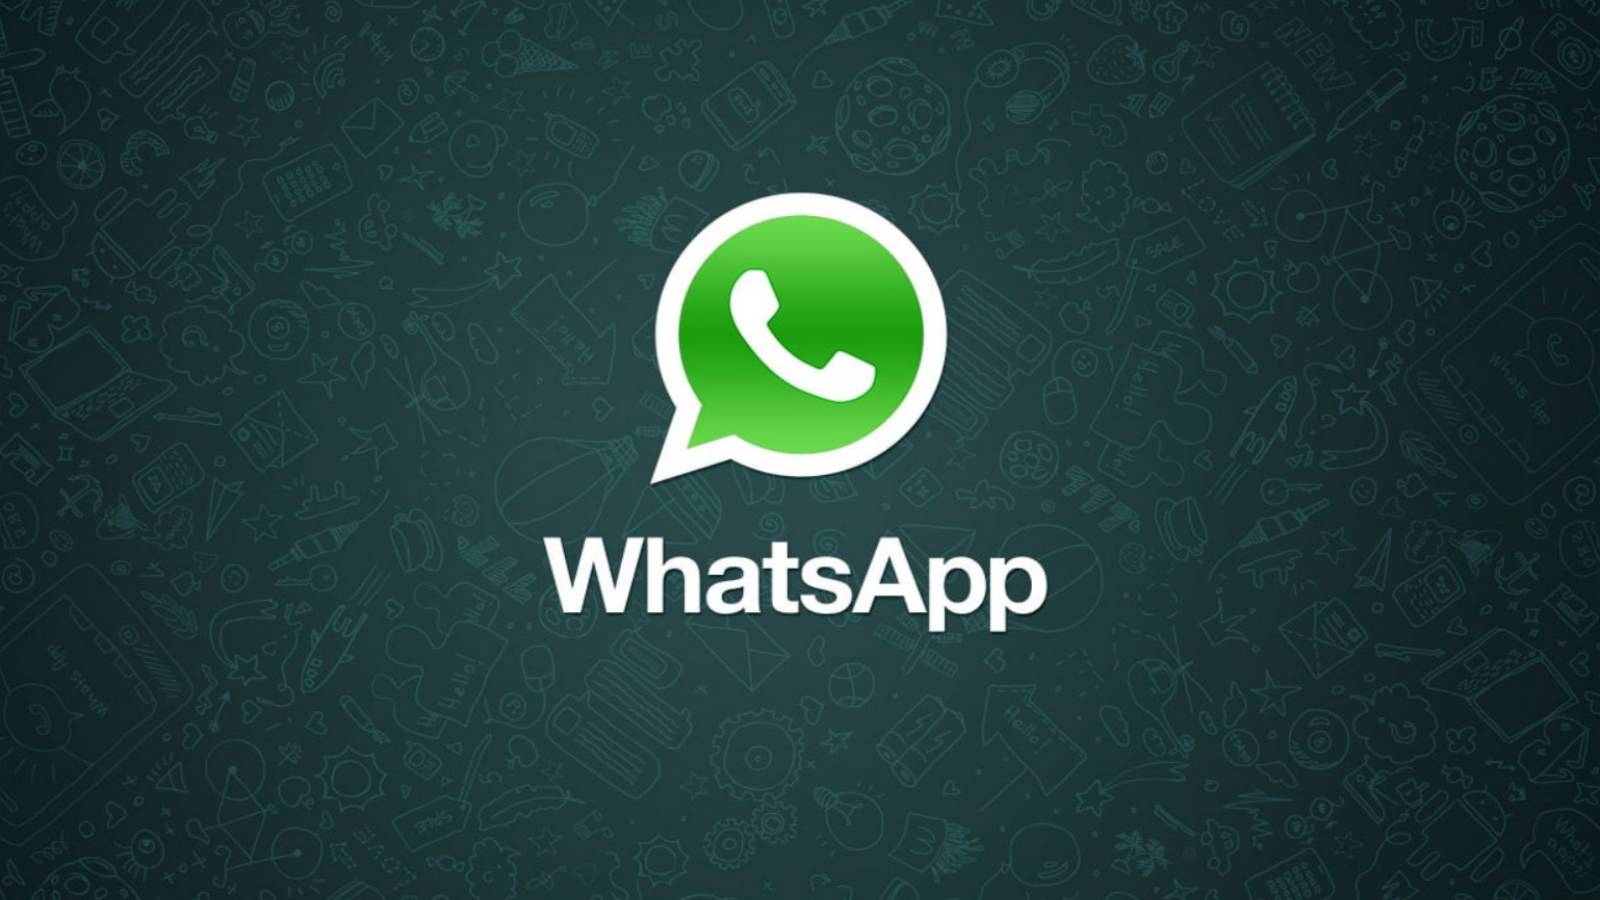 WhatsApp 3 trucos SECRETOS que millones de personas NO conocen